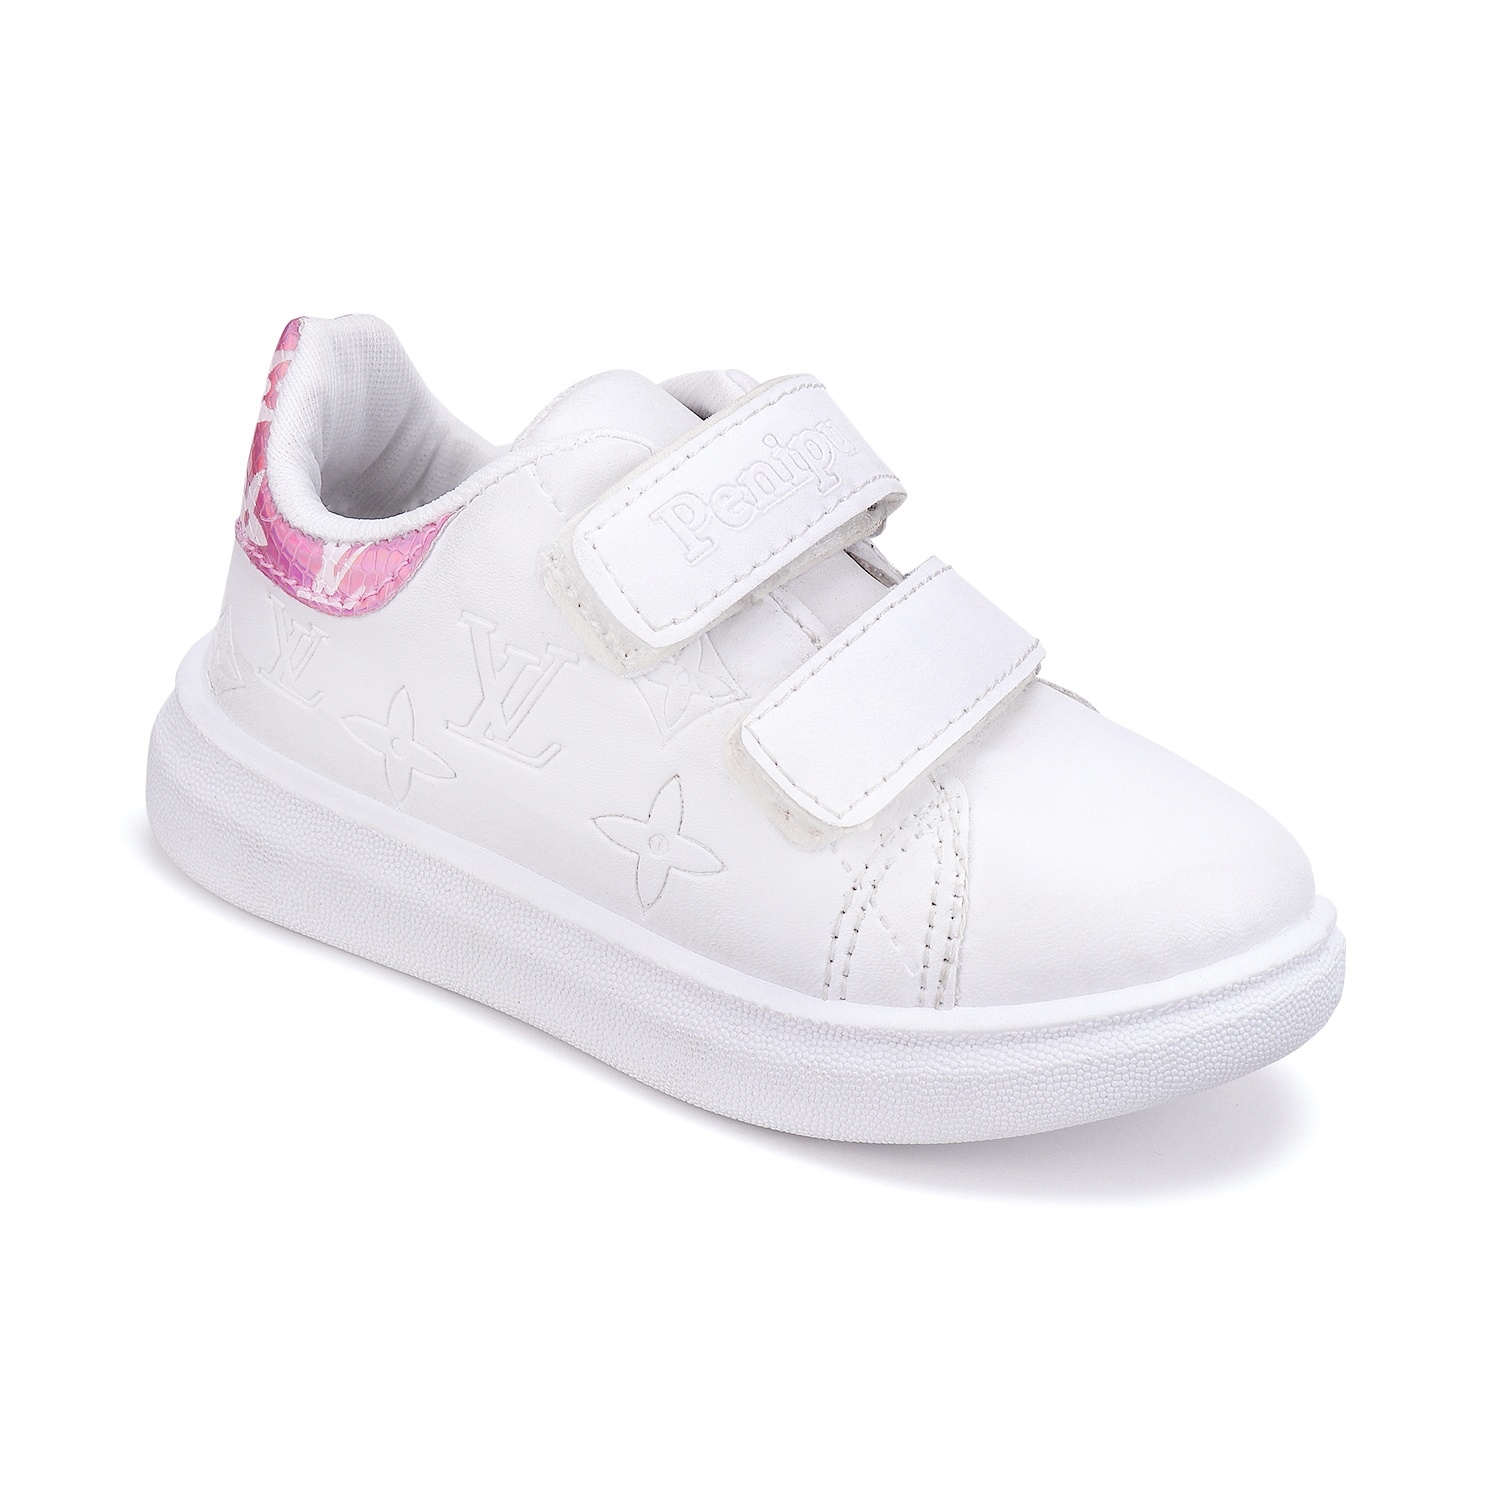 Camro Zara 2 White/Fusia Boys Sneakers